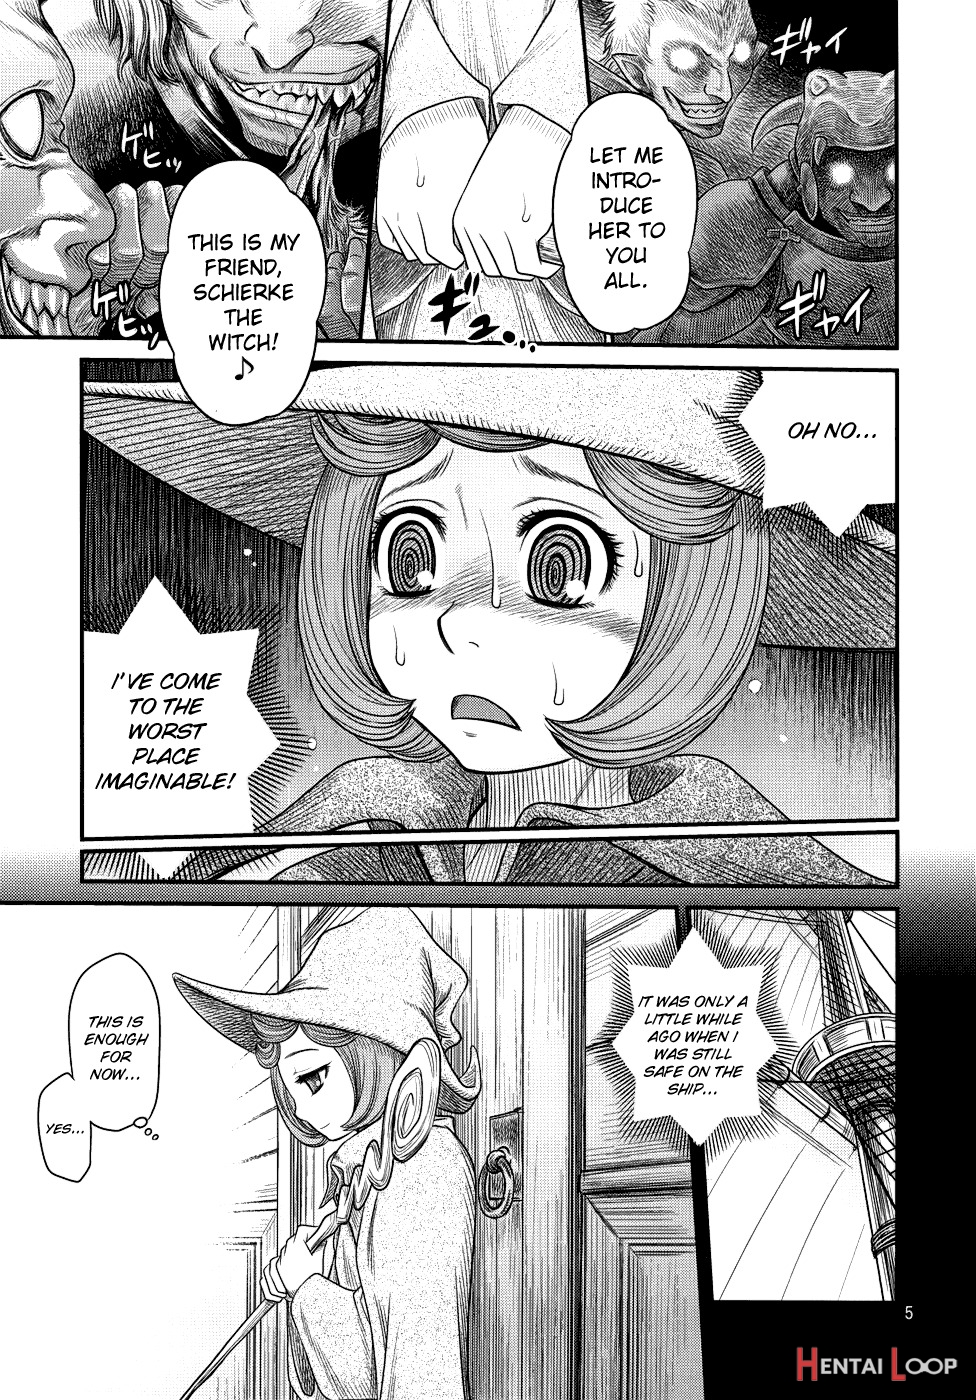 Kuru Kuru Sonia!! page 4